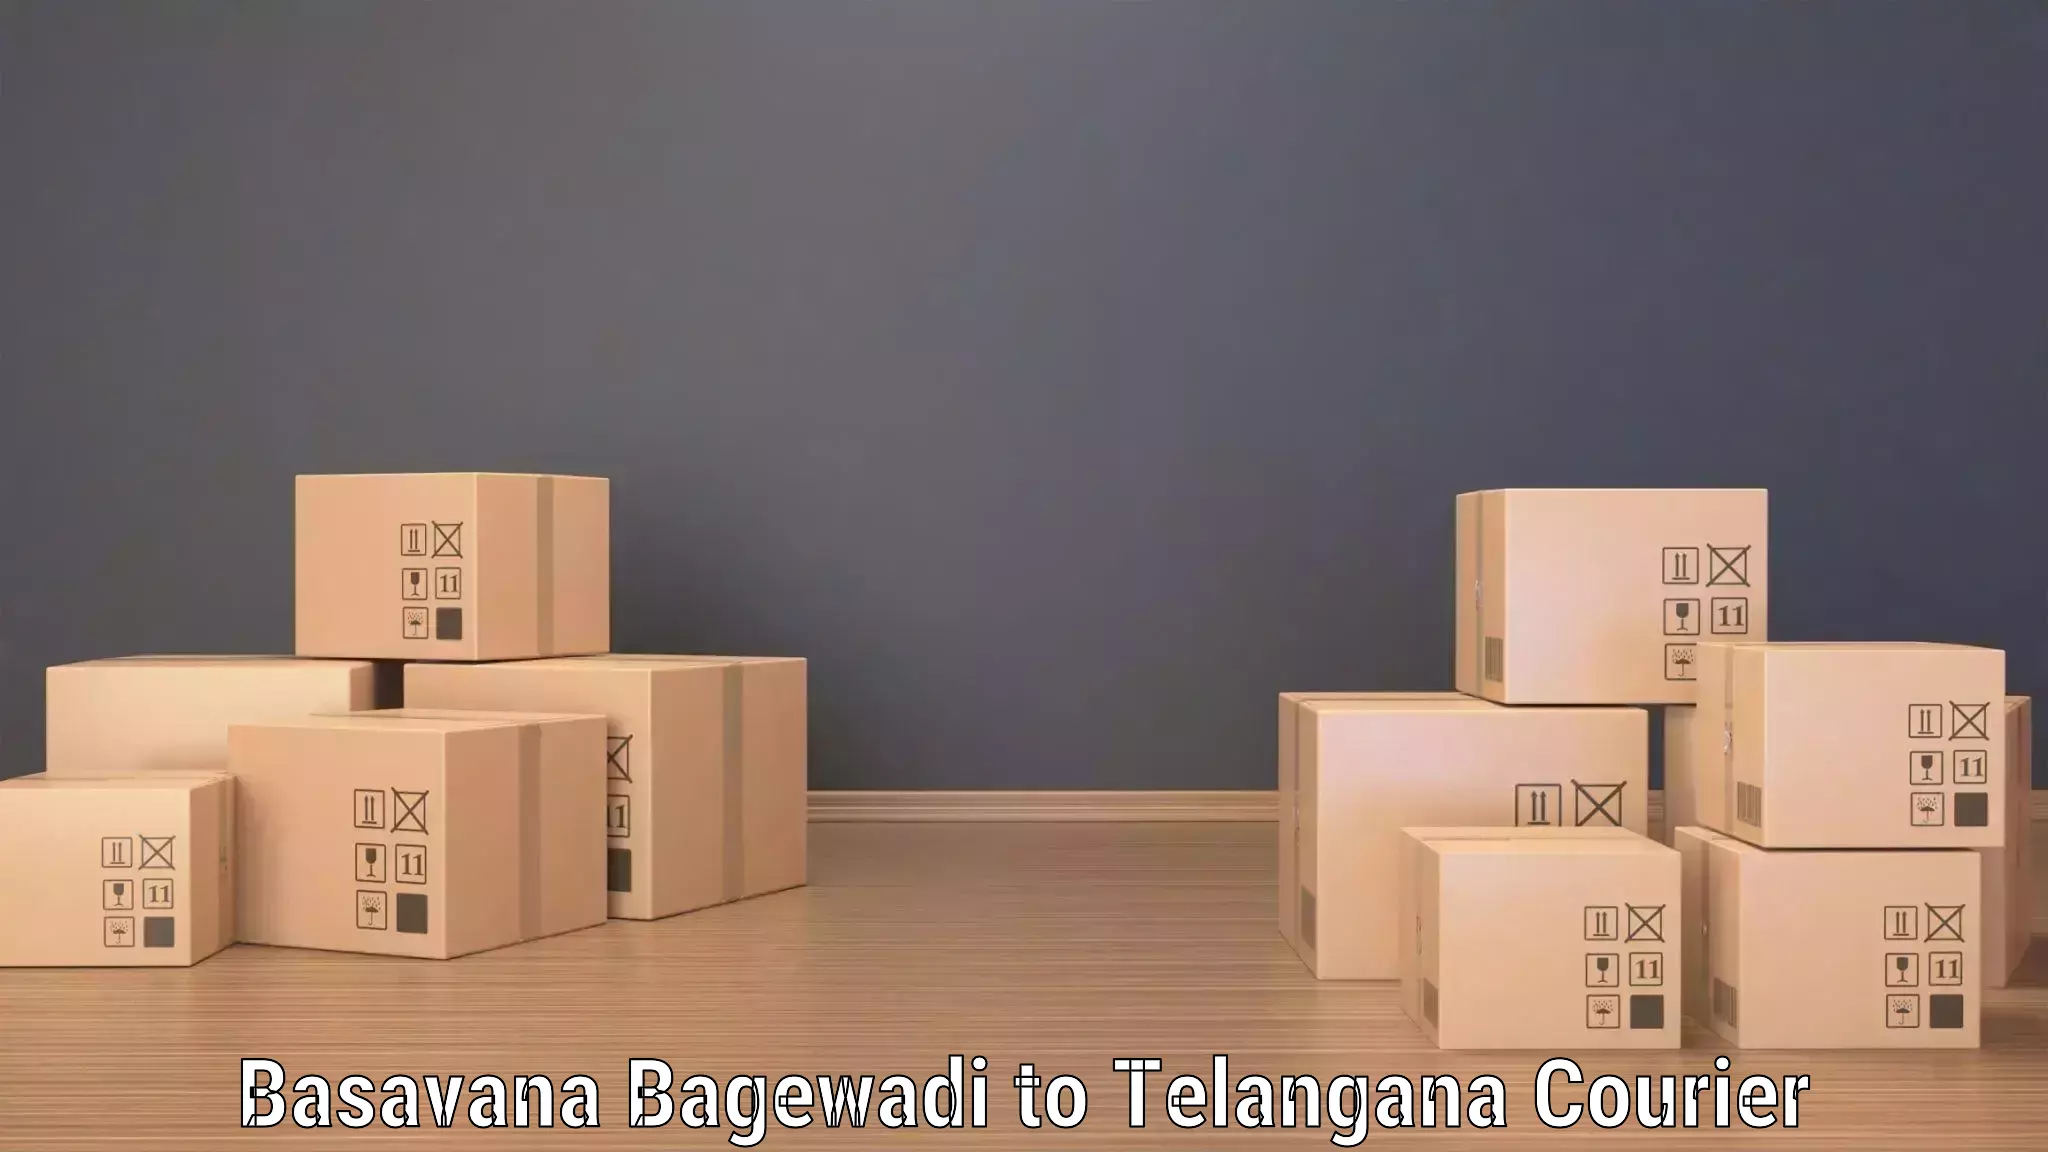 Door-to-door freight service Basavana Bagewadi to Peddapalli